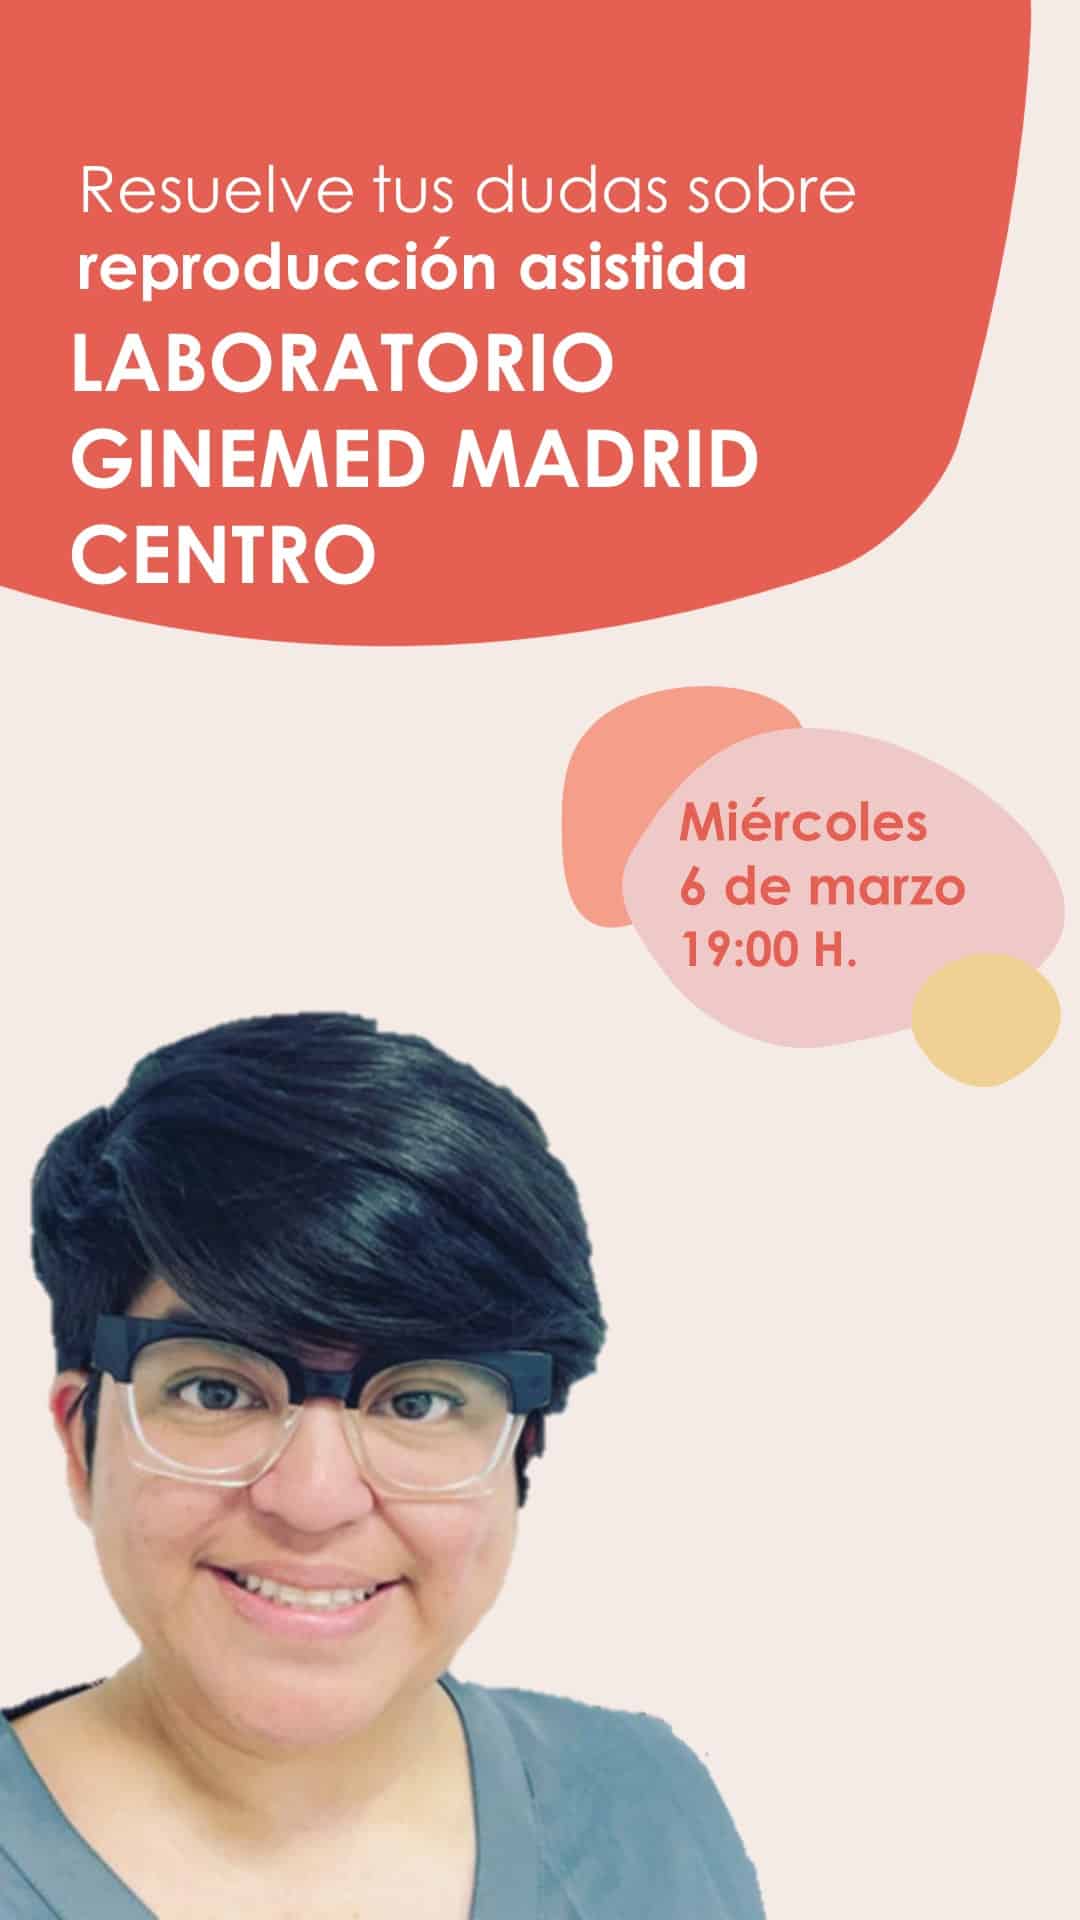 Instagram Live sobre fertilidad desde el Laboratorio de la clínica de reproducción asistida Ginemed Madrid Centro el miércoles 6 de marzo a las 7 de la tarde